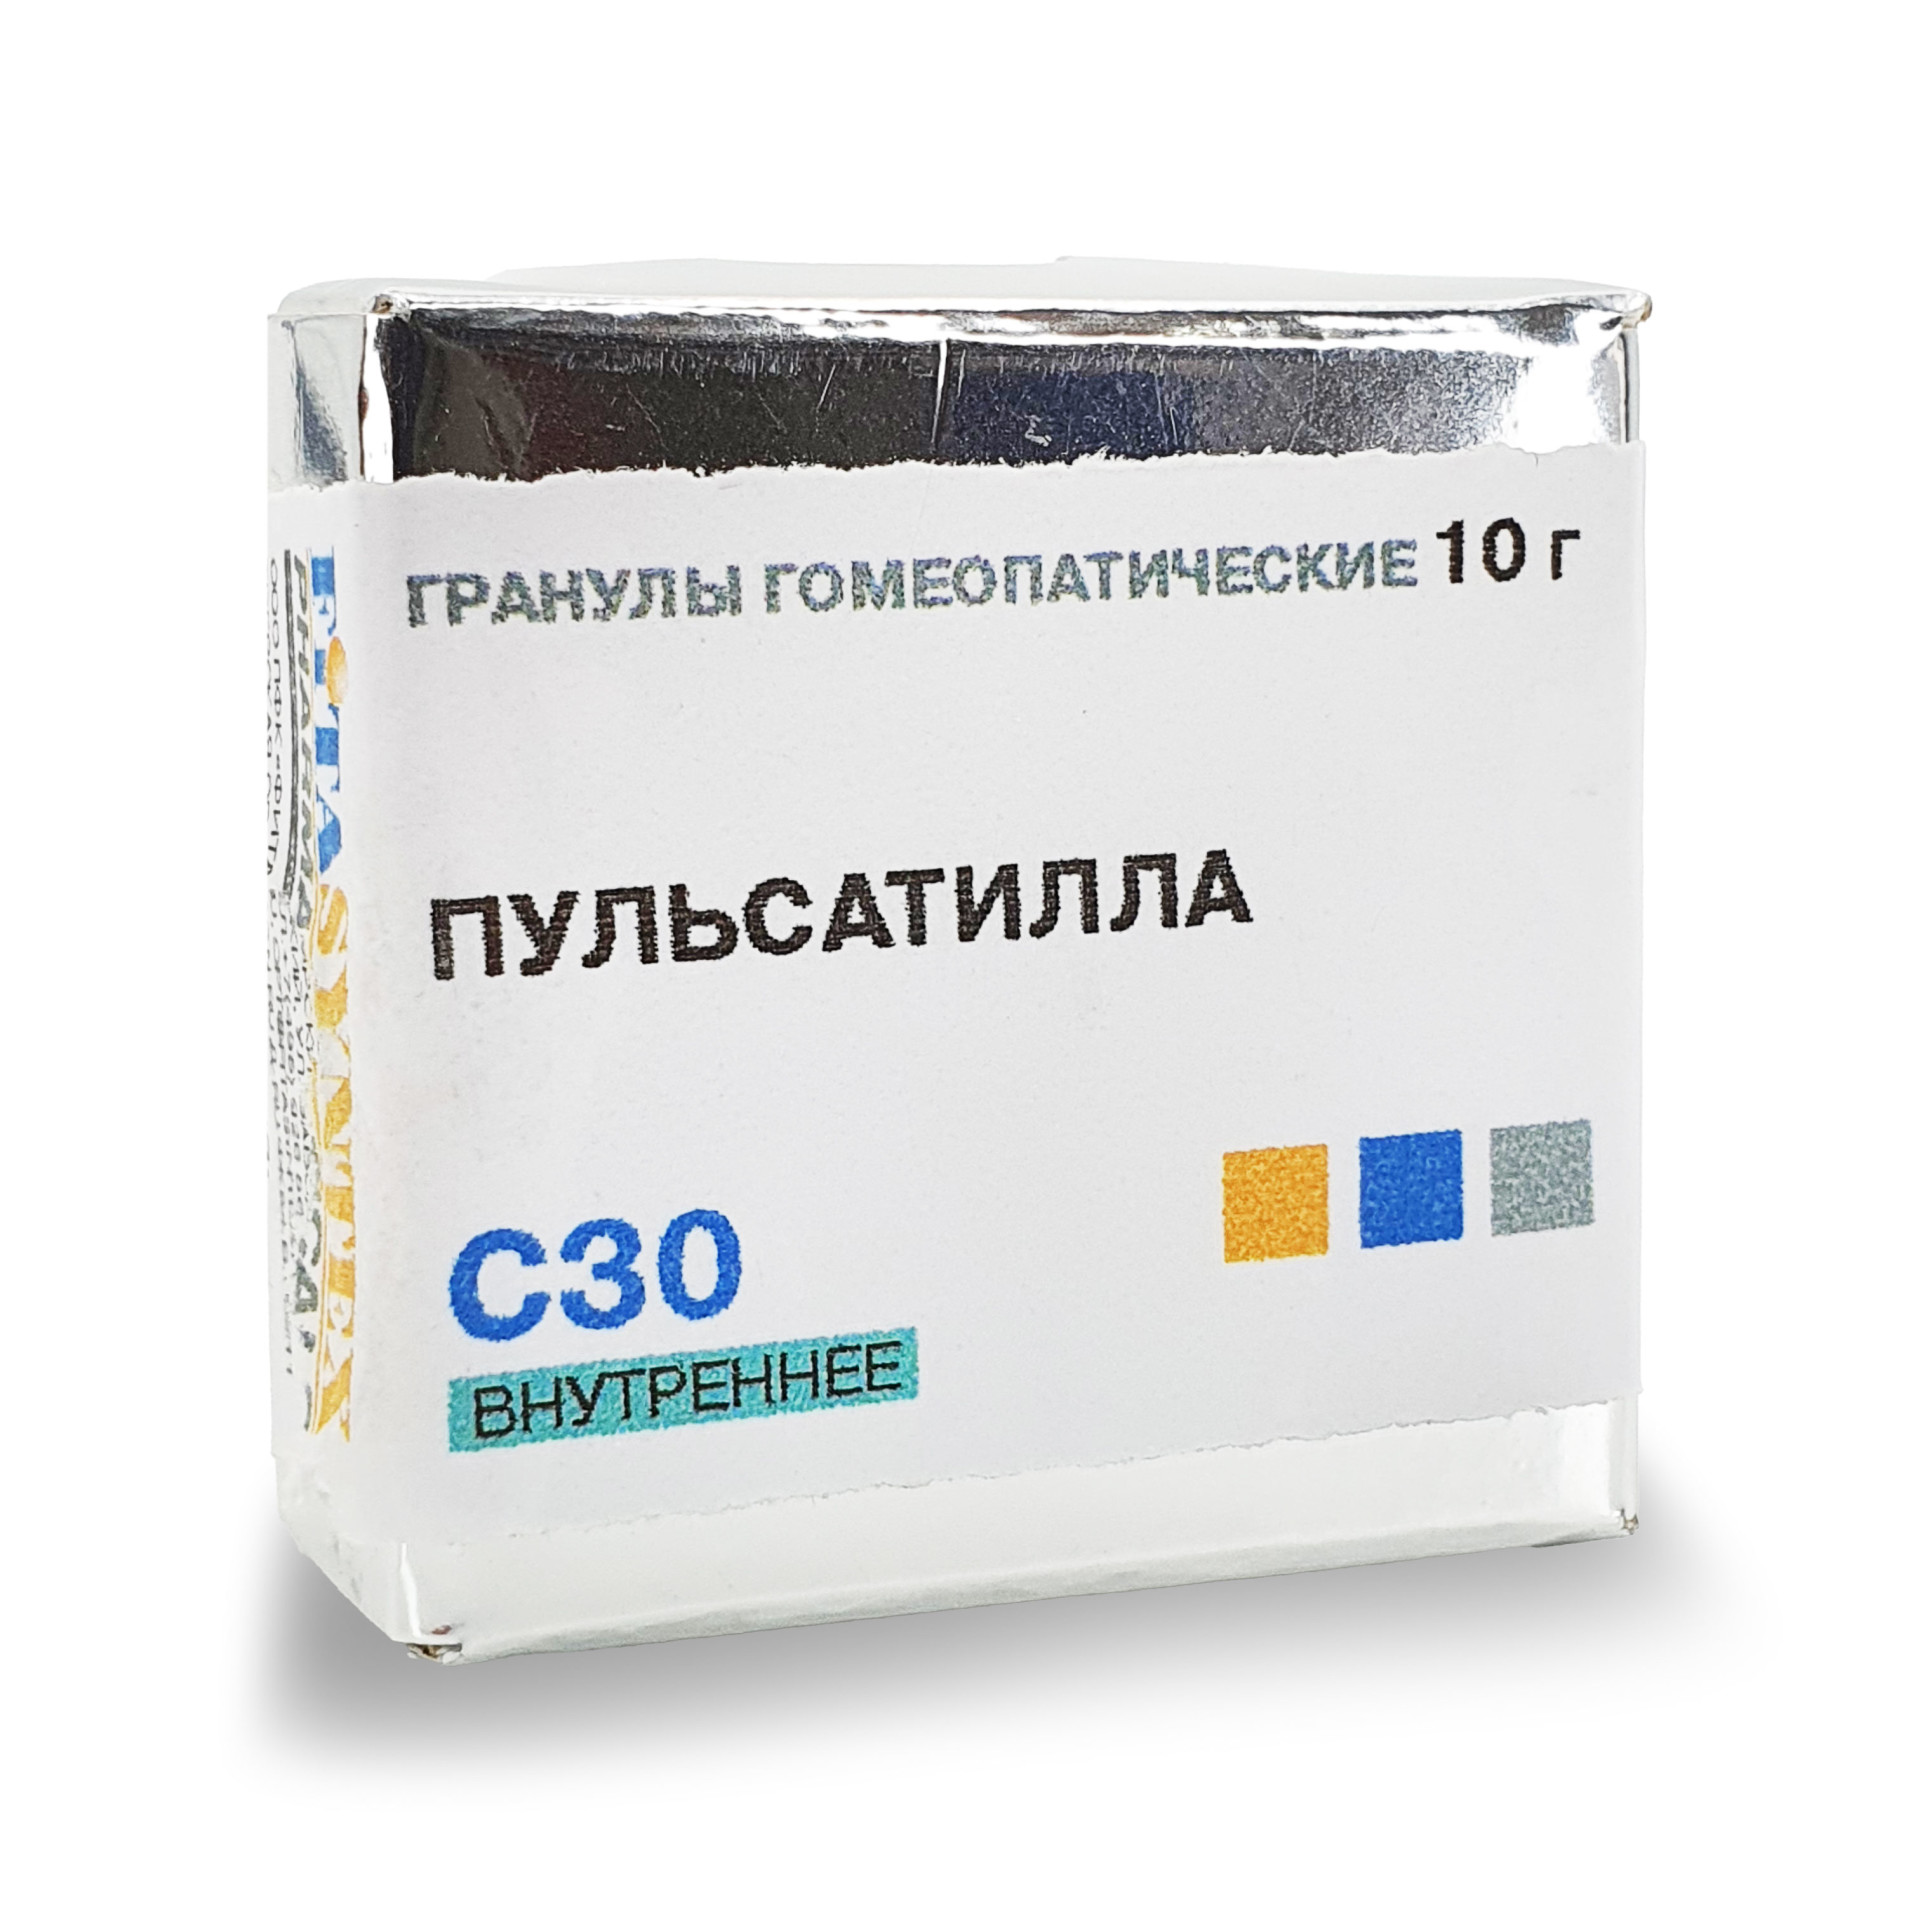 Пульсатилла пратензис (Пульсатилла) С-30 гранулы 10г  в Истре по .